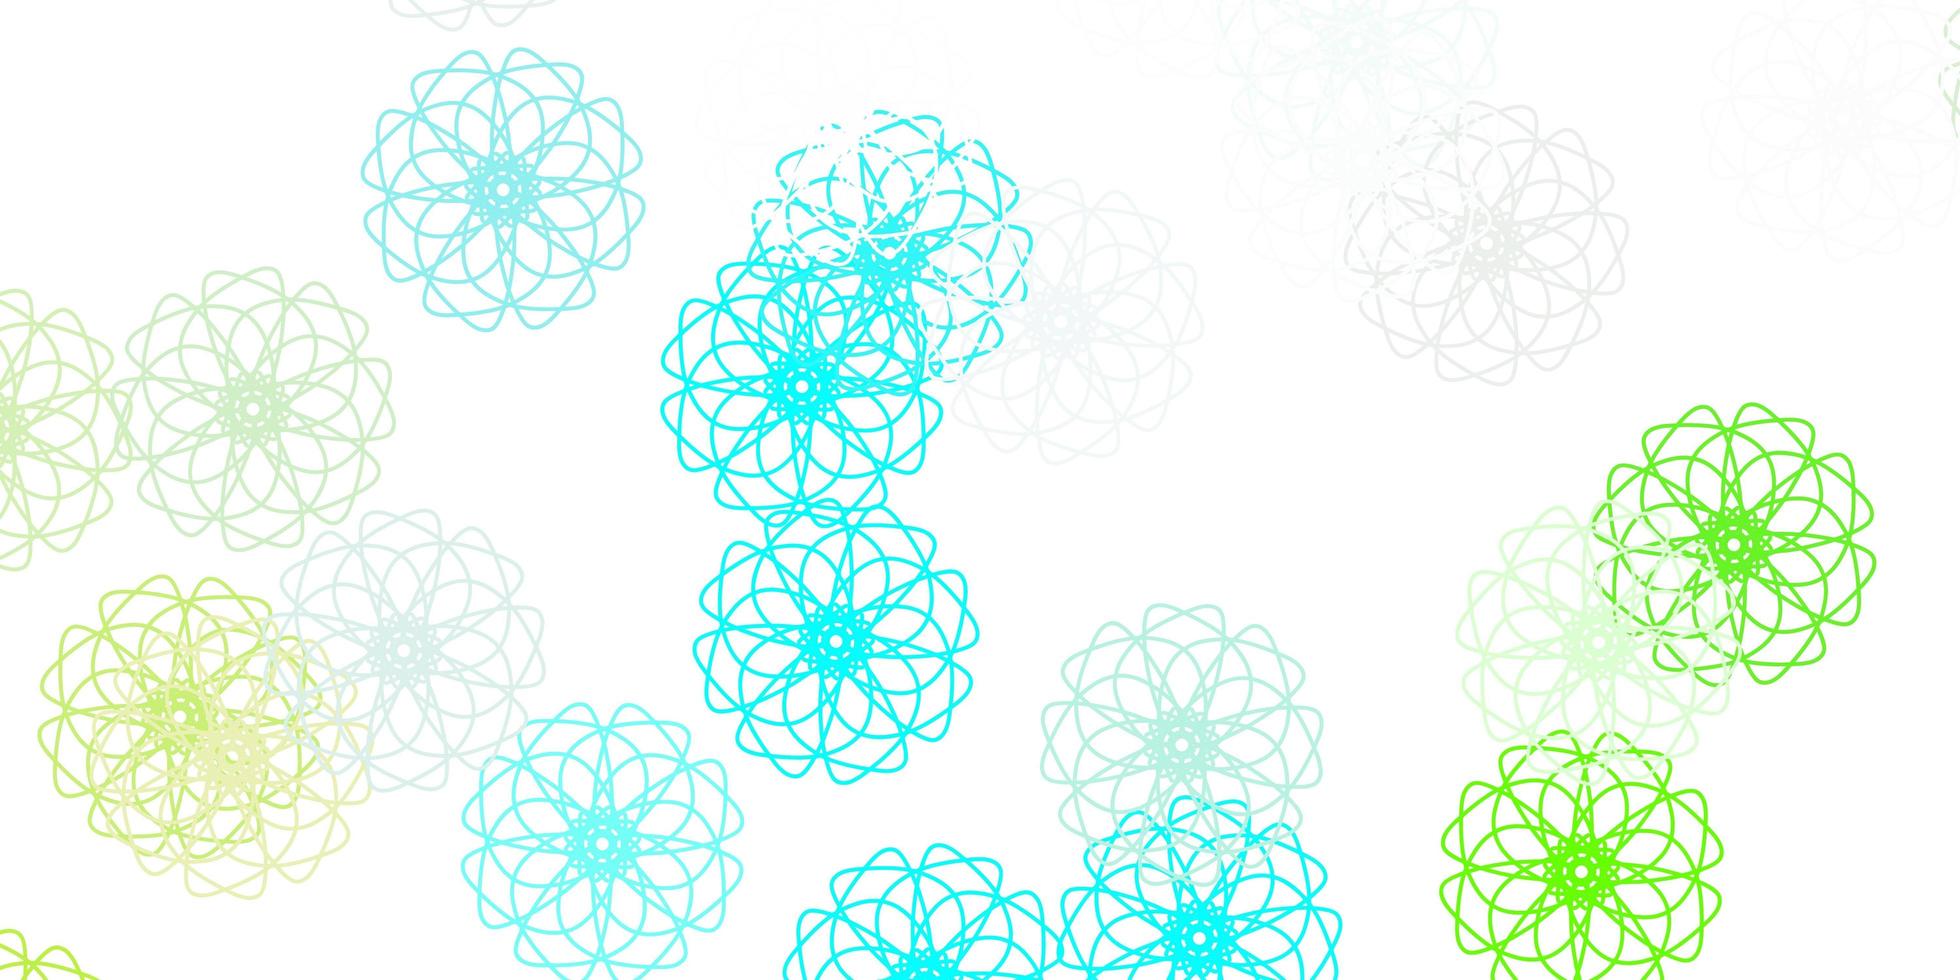 natürlicher Hintergrund des hellblauen, grünen Vektors mit Blumen. vektor